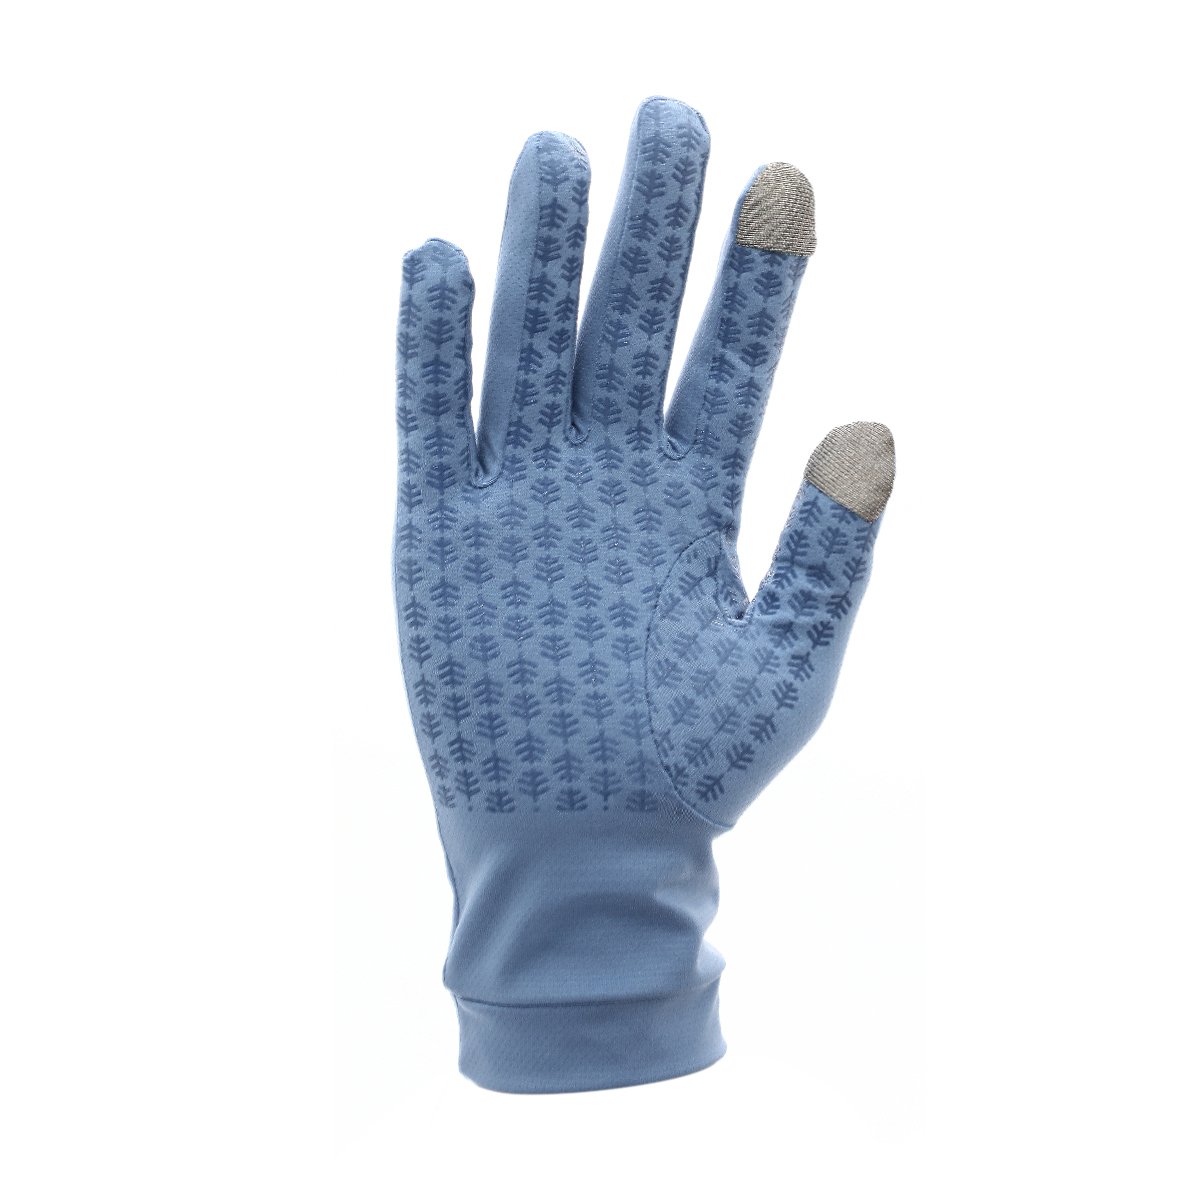 Buy Gannett UV Sun Protective Gloves - Moonlight Blue Online in Kuwait